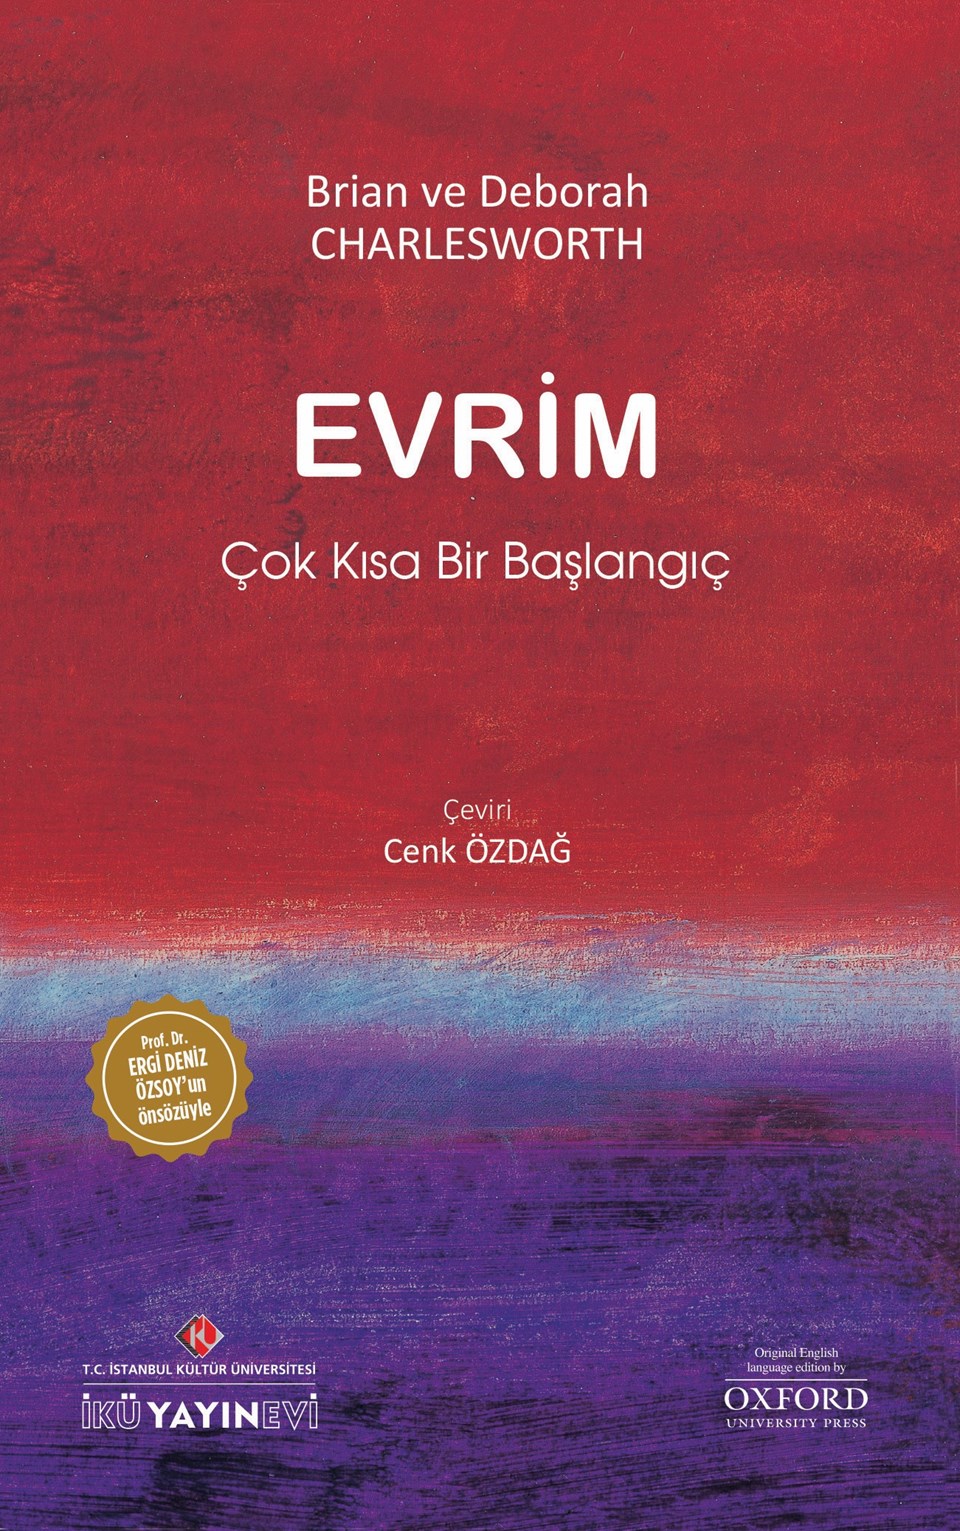 Oxford Üniversitesi Yayınevi'nin dünyaca ünlü Evrim kitabı Türkçede - 1